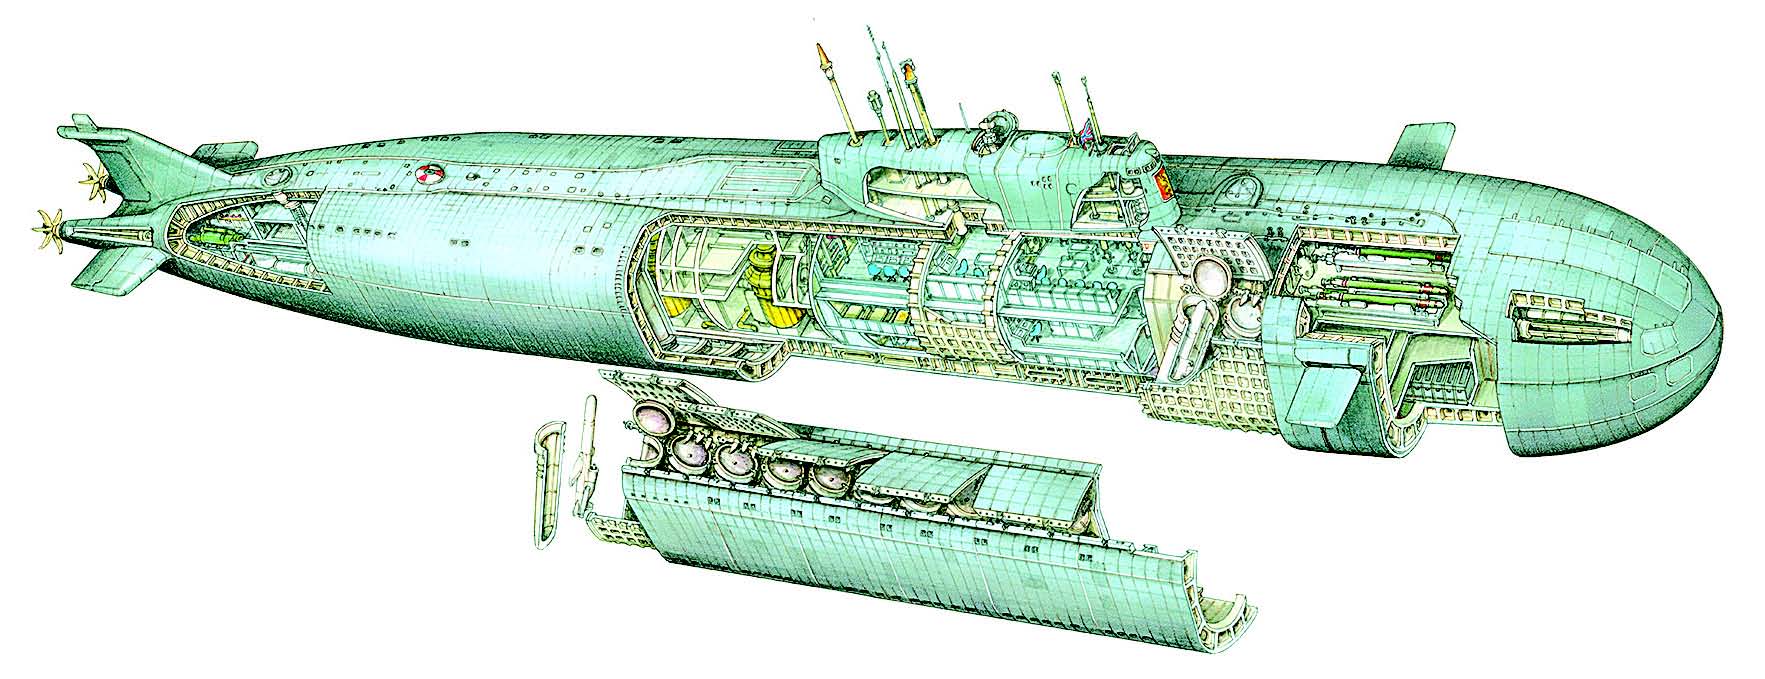 Атомные подводные лодки проекта 949 949а «гранит» «антей»